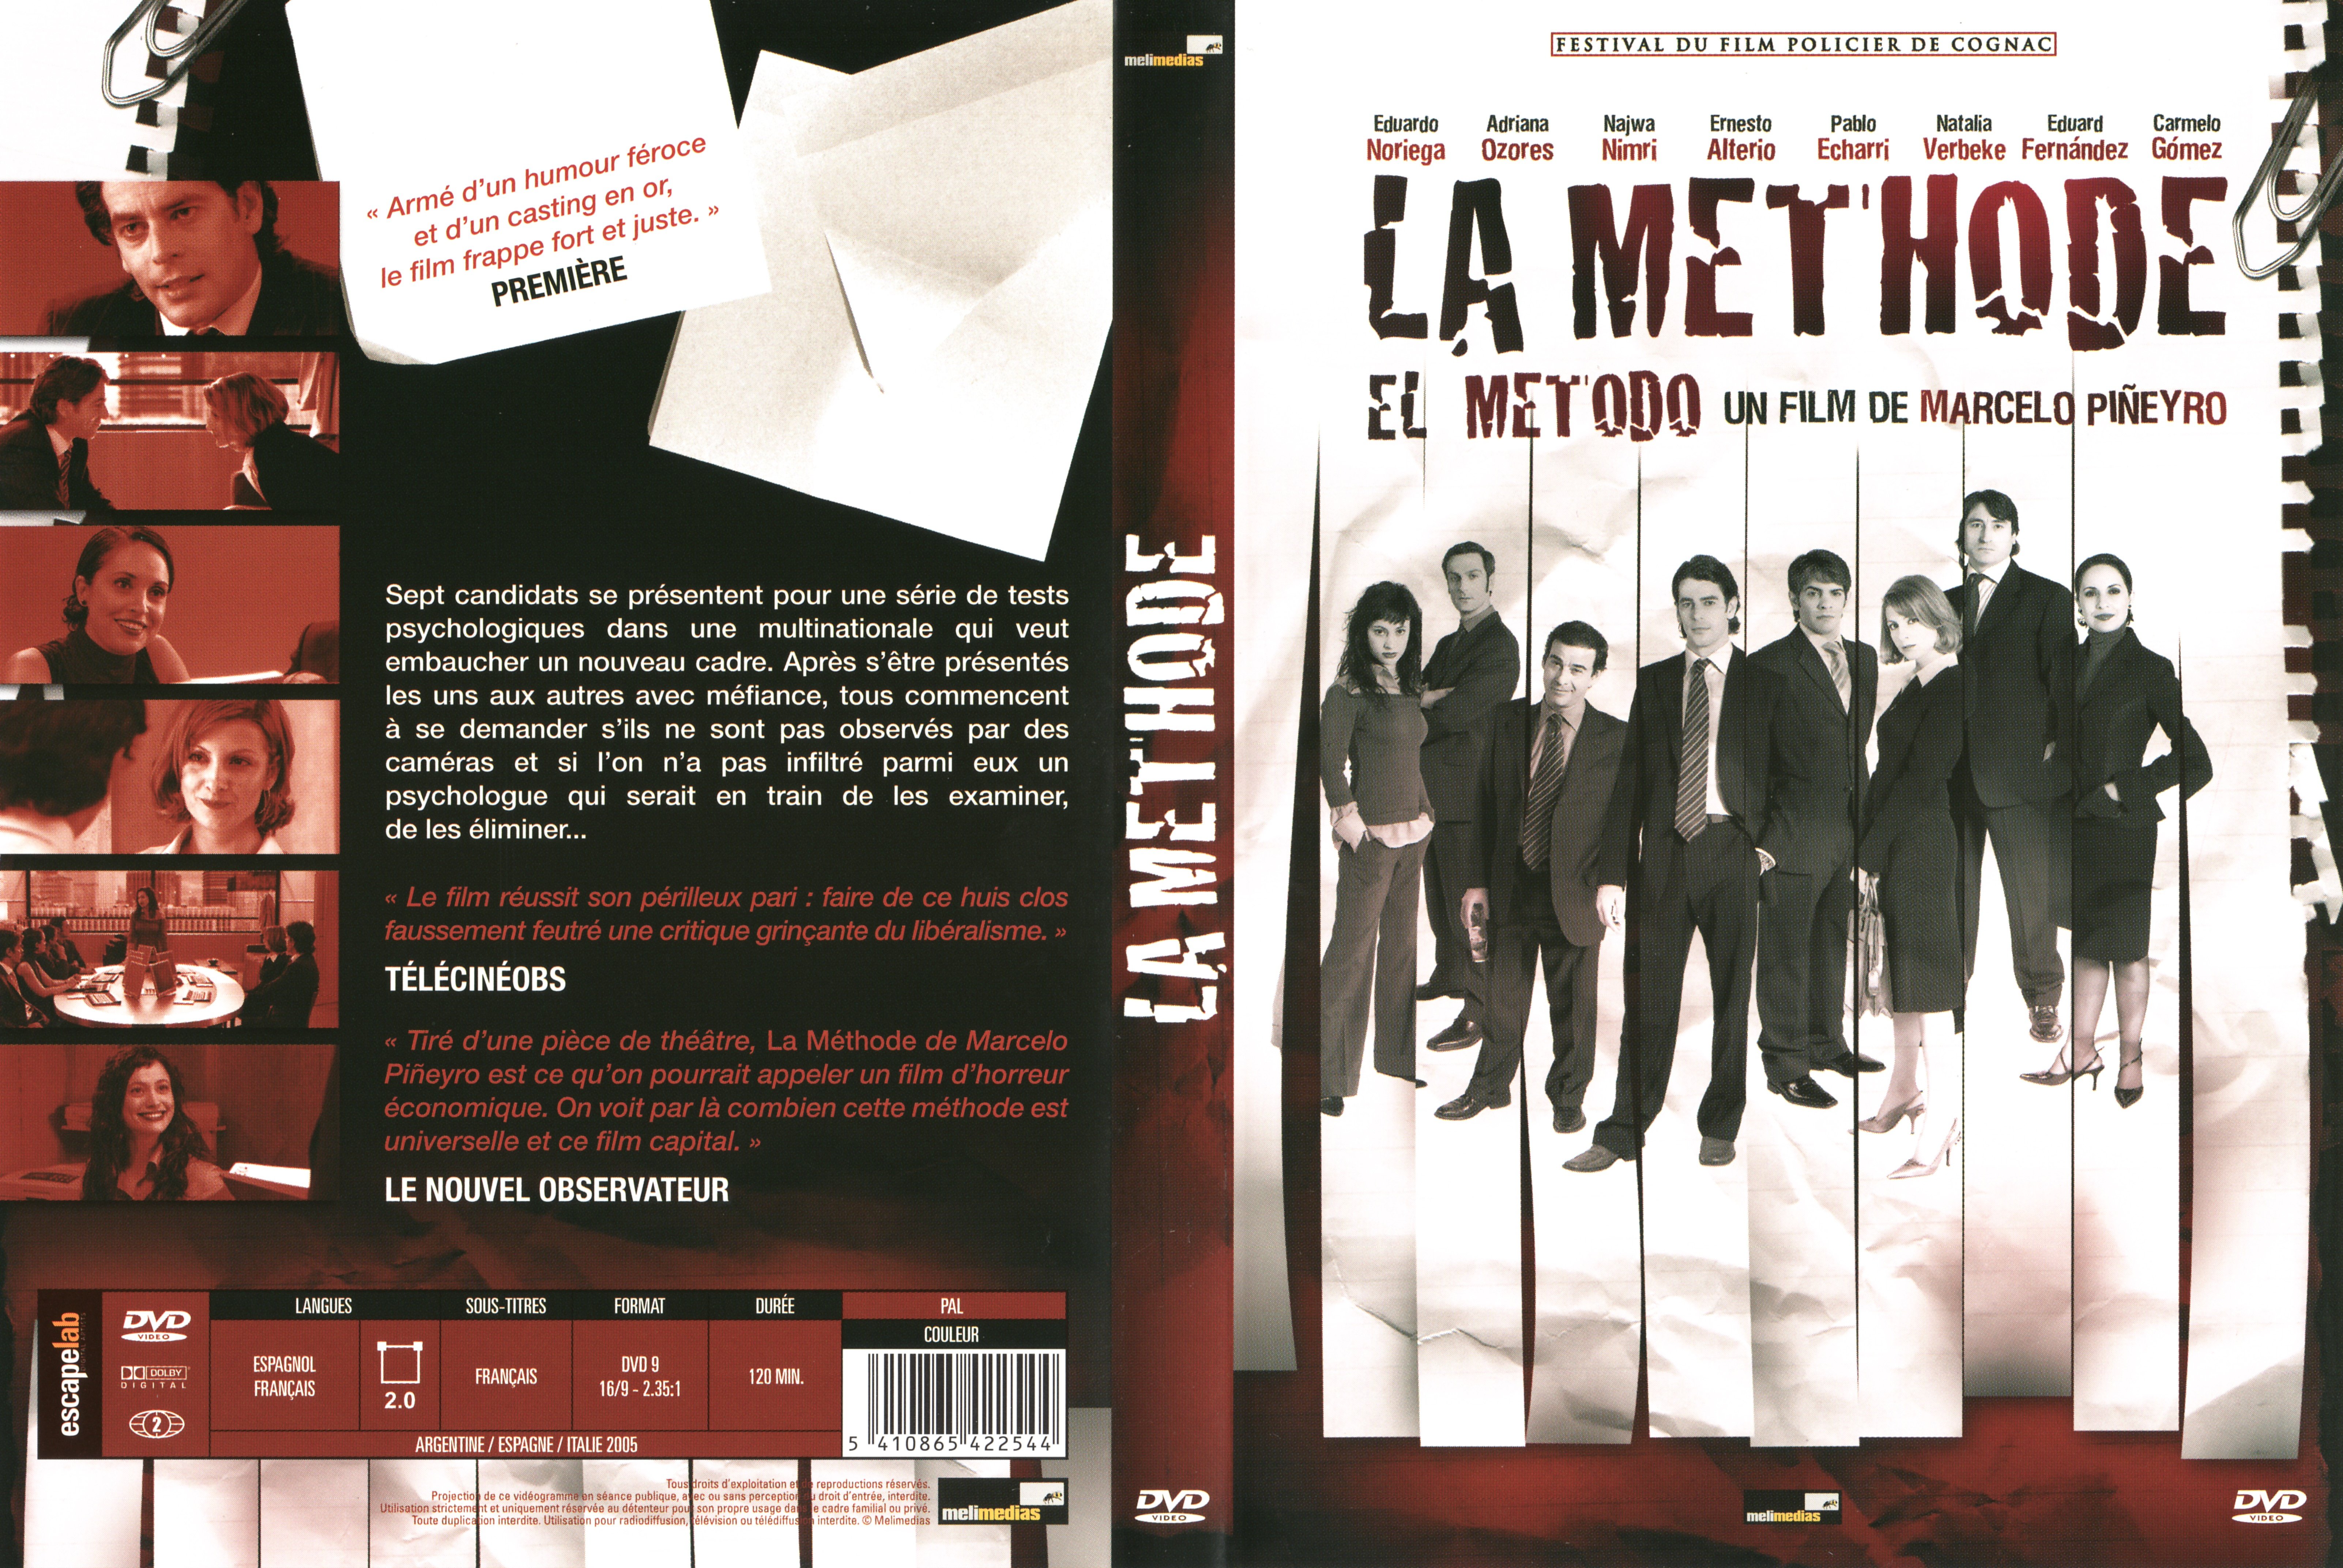 Jaquette DVD La methode v2